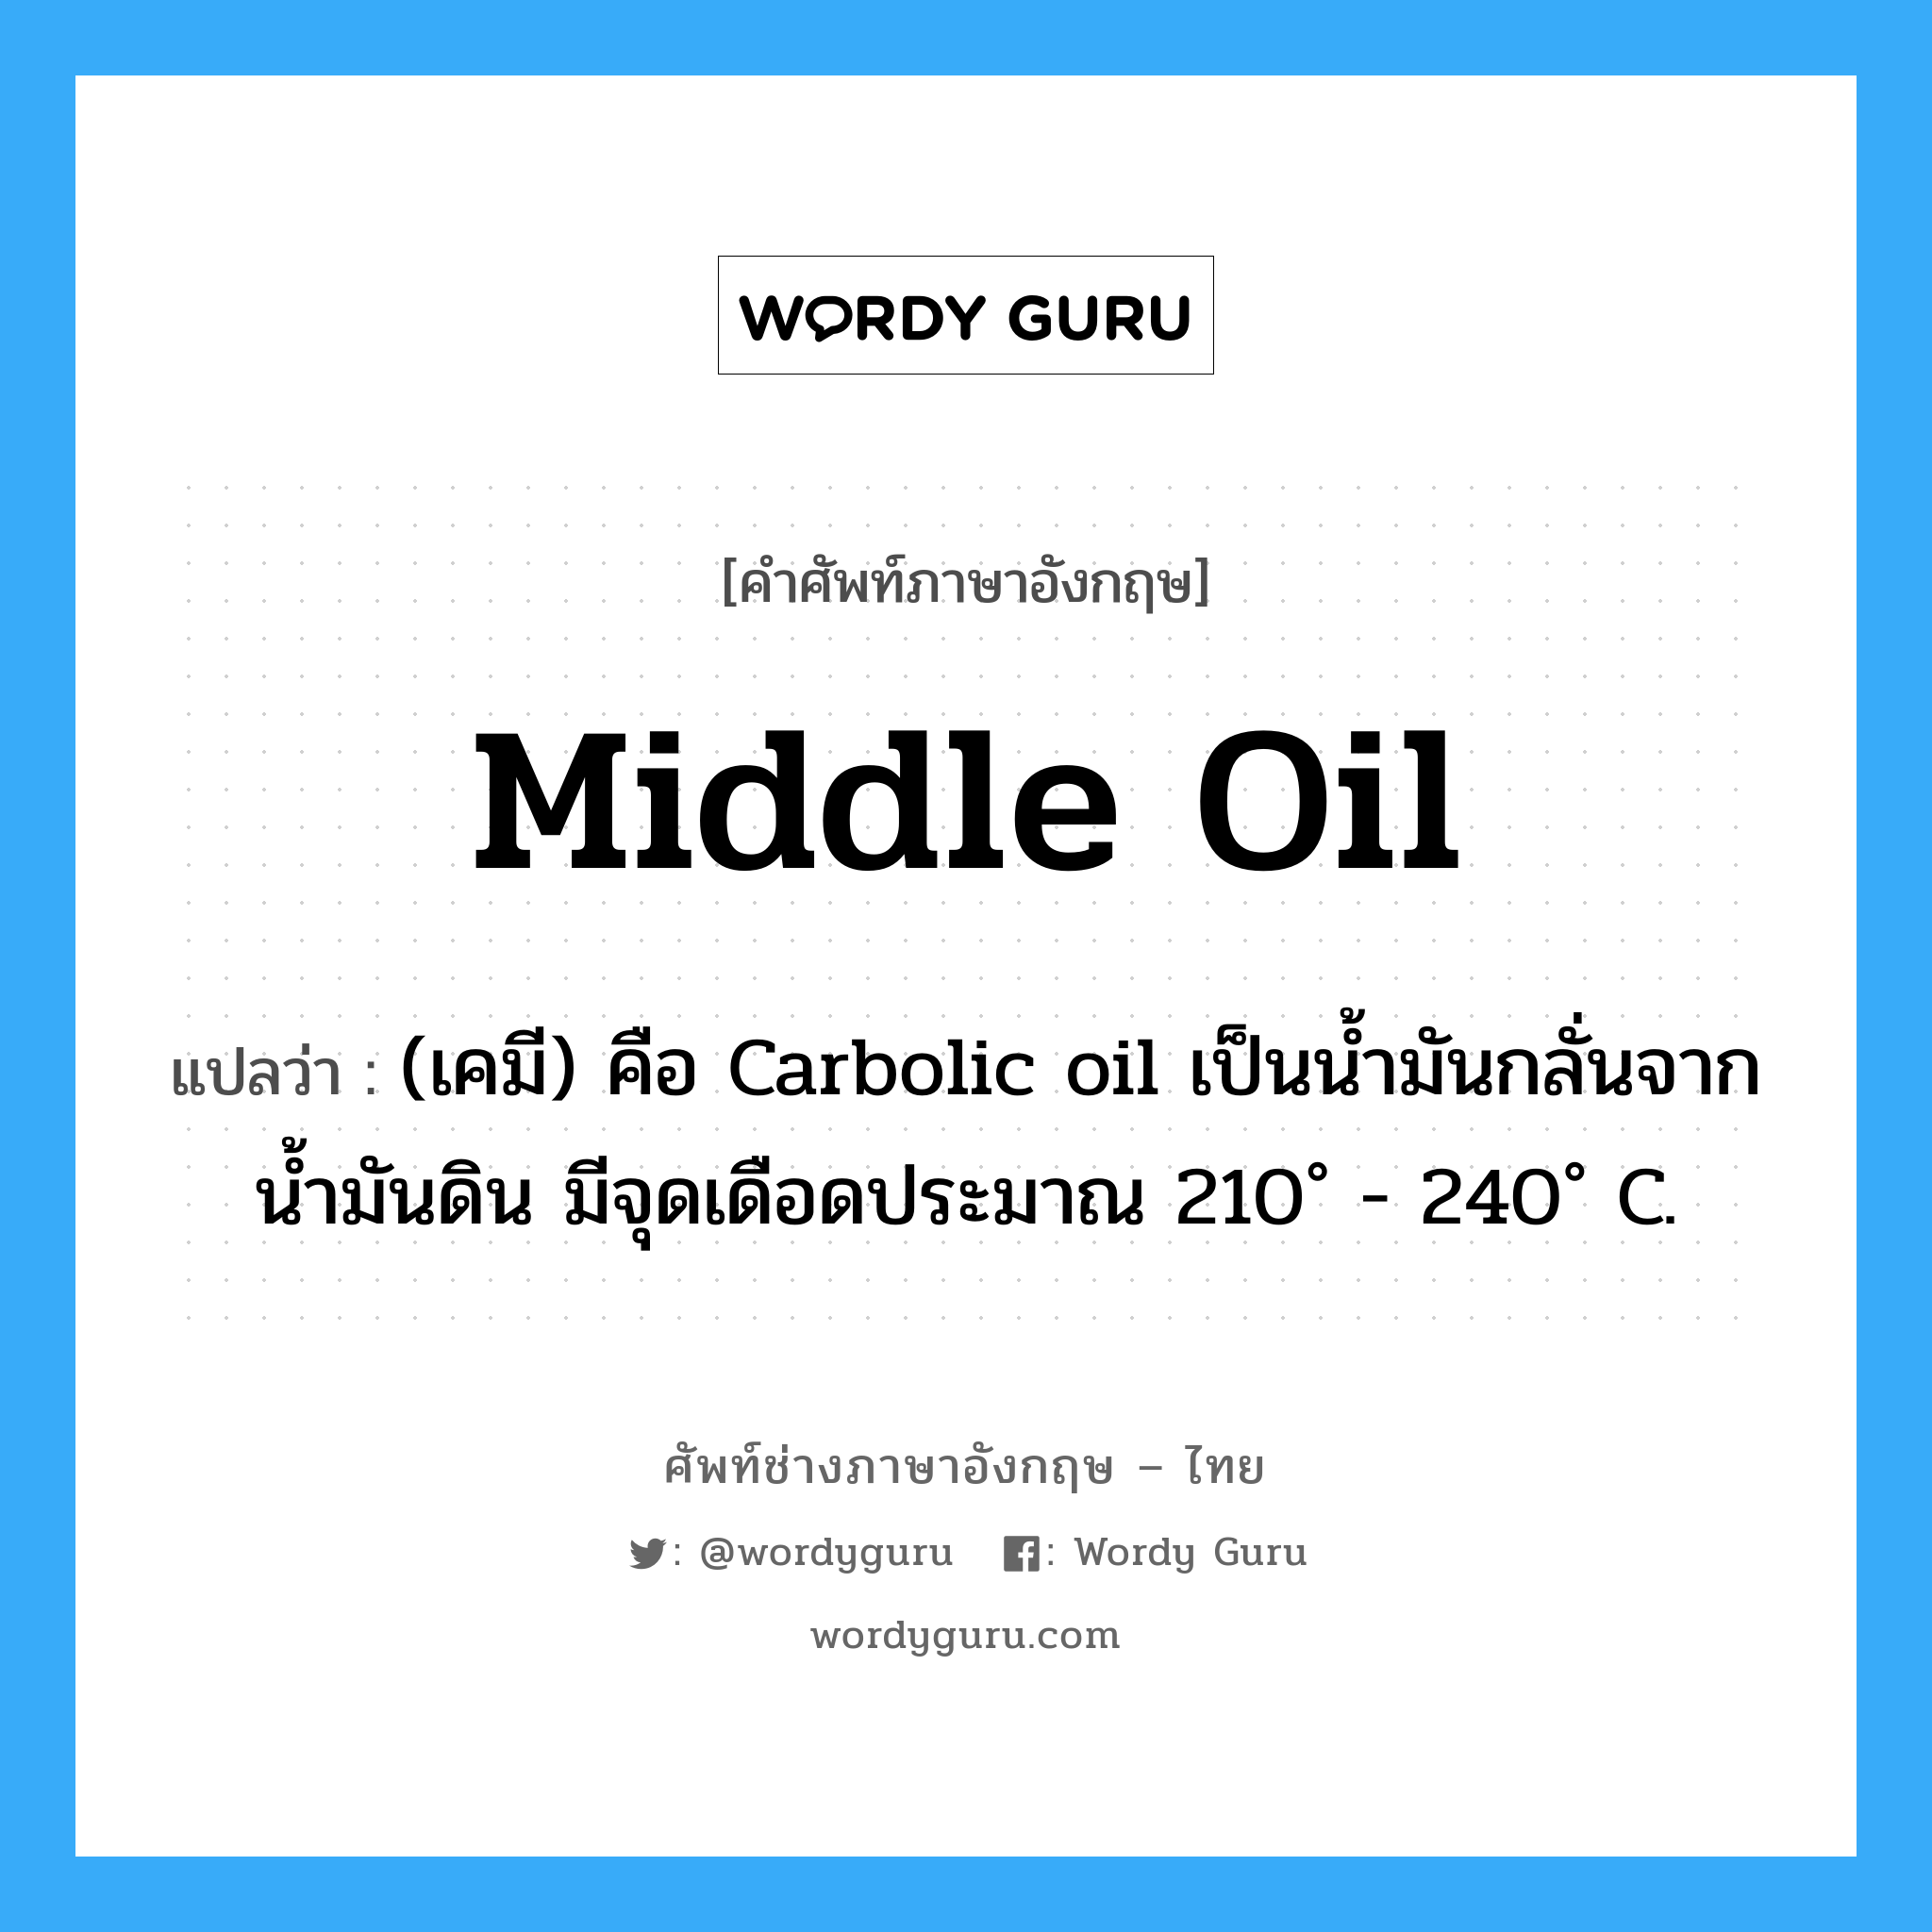 (เคมี) คือ Carbolic oil เป็นน้ำมันกลั่นจากน้ำมันดิน มีจุดเดือดประมาณ 210˚ - 240˚ C. ภาษาอังกฤษ?, คำศัพท์ช่างภาษาอังกฤษ - ไทย (เคมี) คือ Carbolic oil เป็นน้ำมันกลั่นจากน้ำมันดิน มีจุดเดือดประมาณ 210˚ - 240˚ C. คำศัพท์ภาษาอังกฤษ (เคมี) คือ Carbolic oil เป็นน้ำมันกลั่นจากน้ำมันดิน มีจุดเดือดประมาณ 210˚ - 240˚ C. แปลว่า middle oil